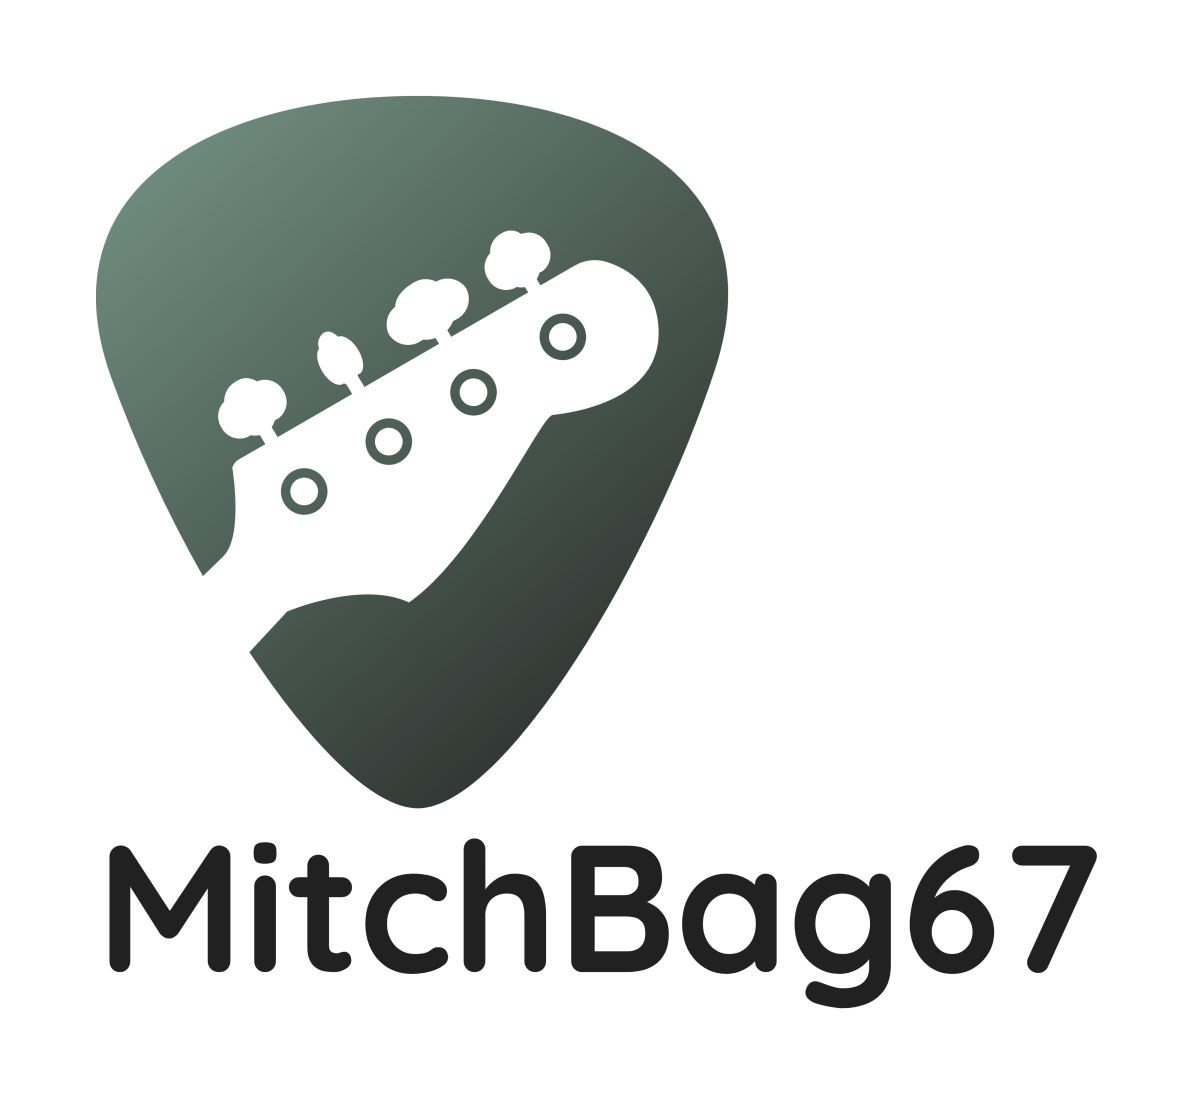 MitchBag67